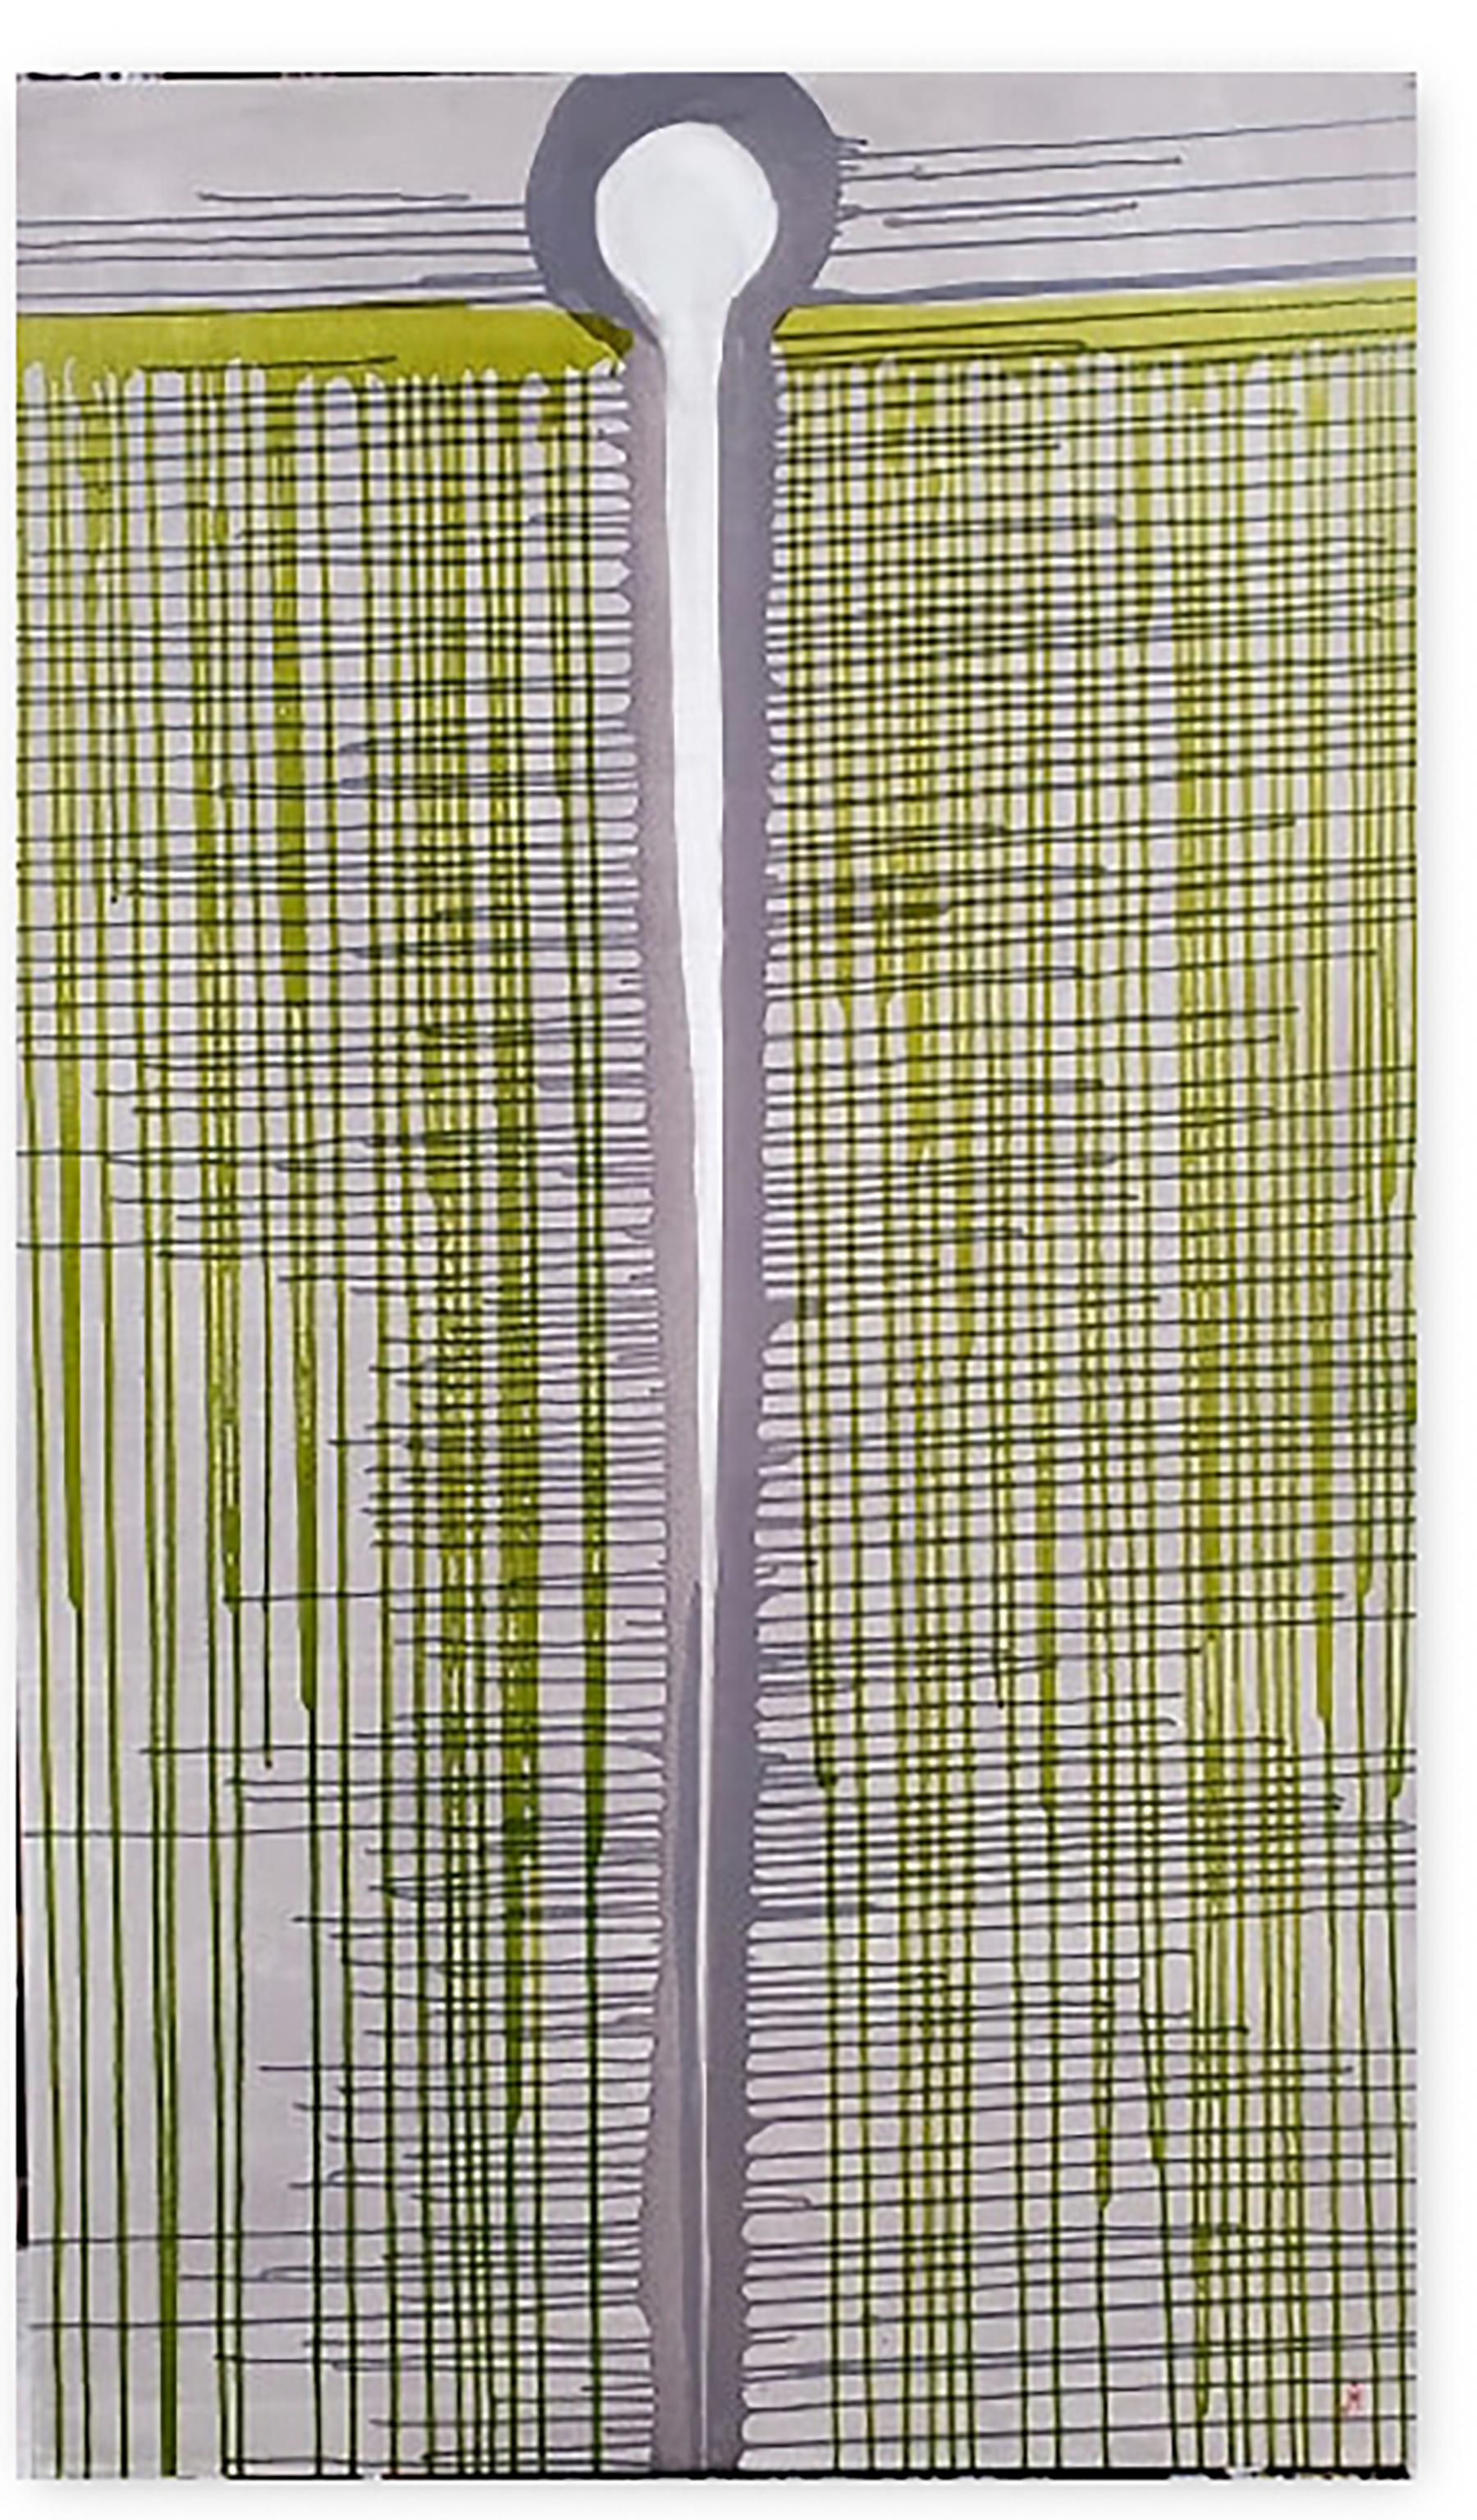 J. Oscar Molina Abstract Painting - Needle & Thread 